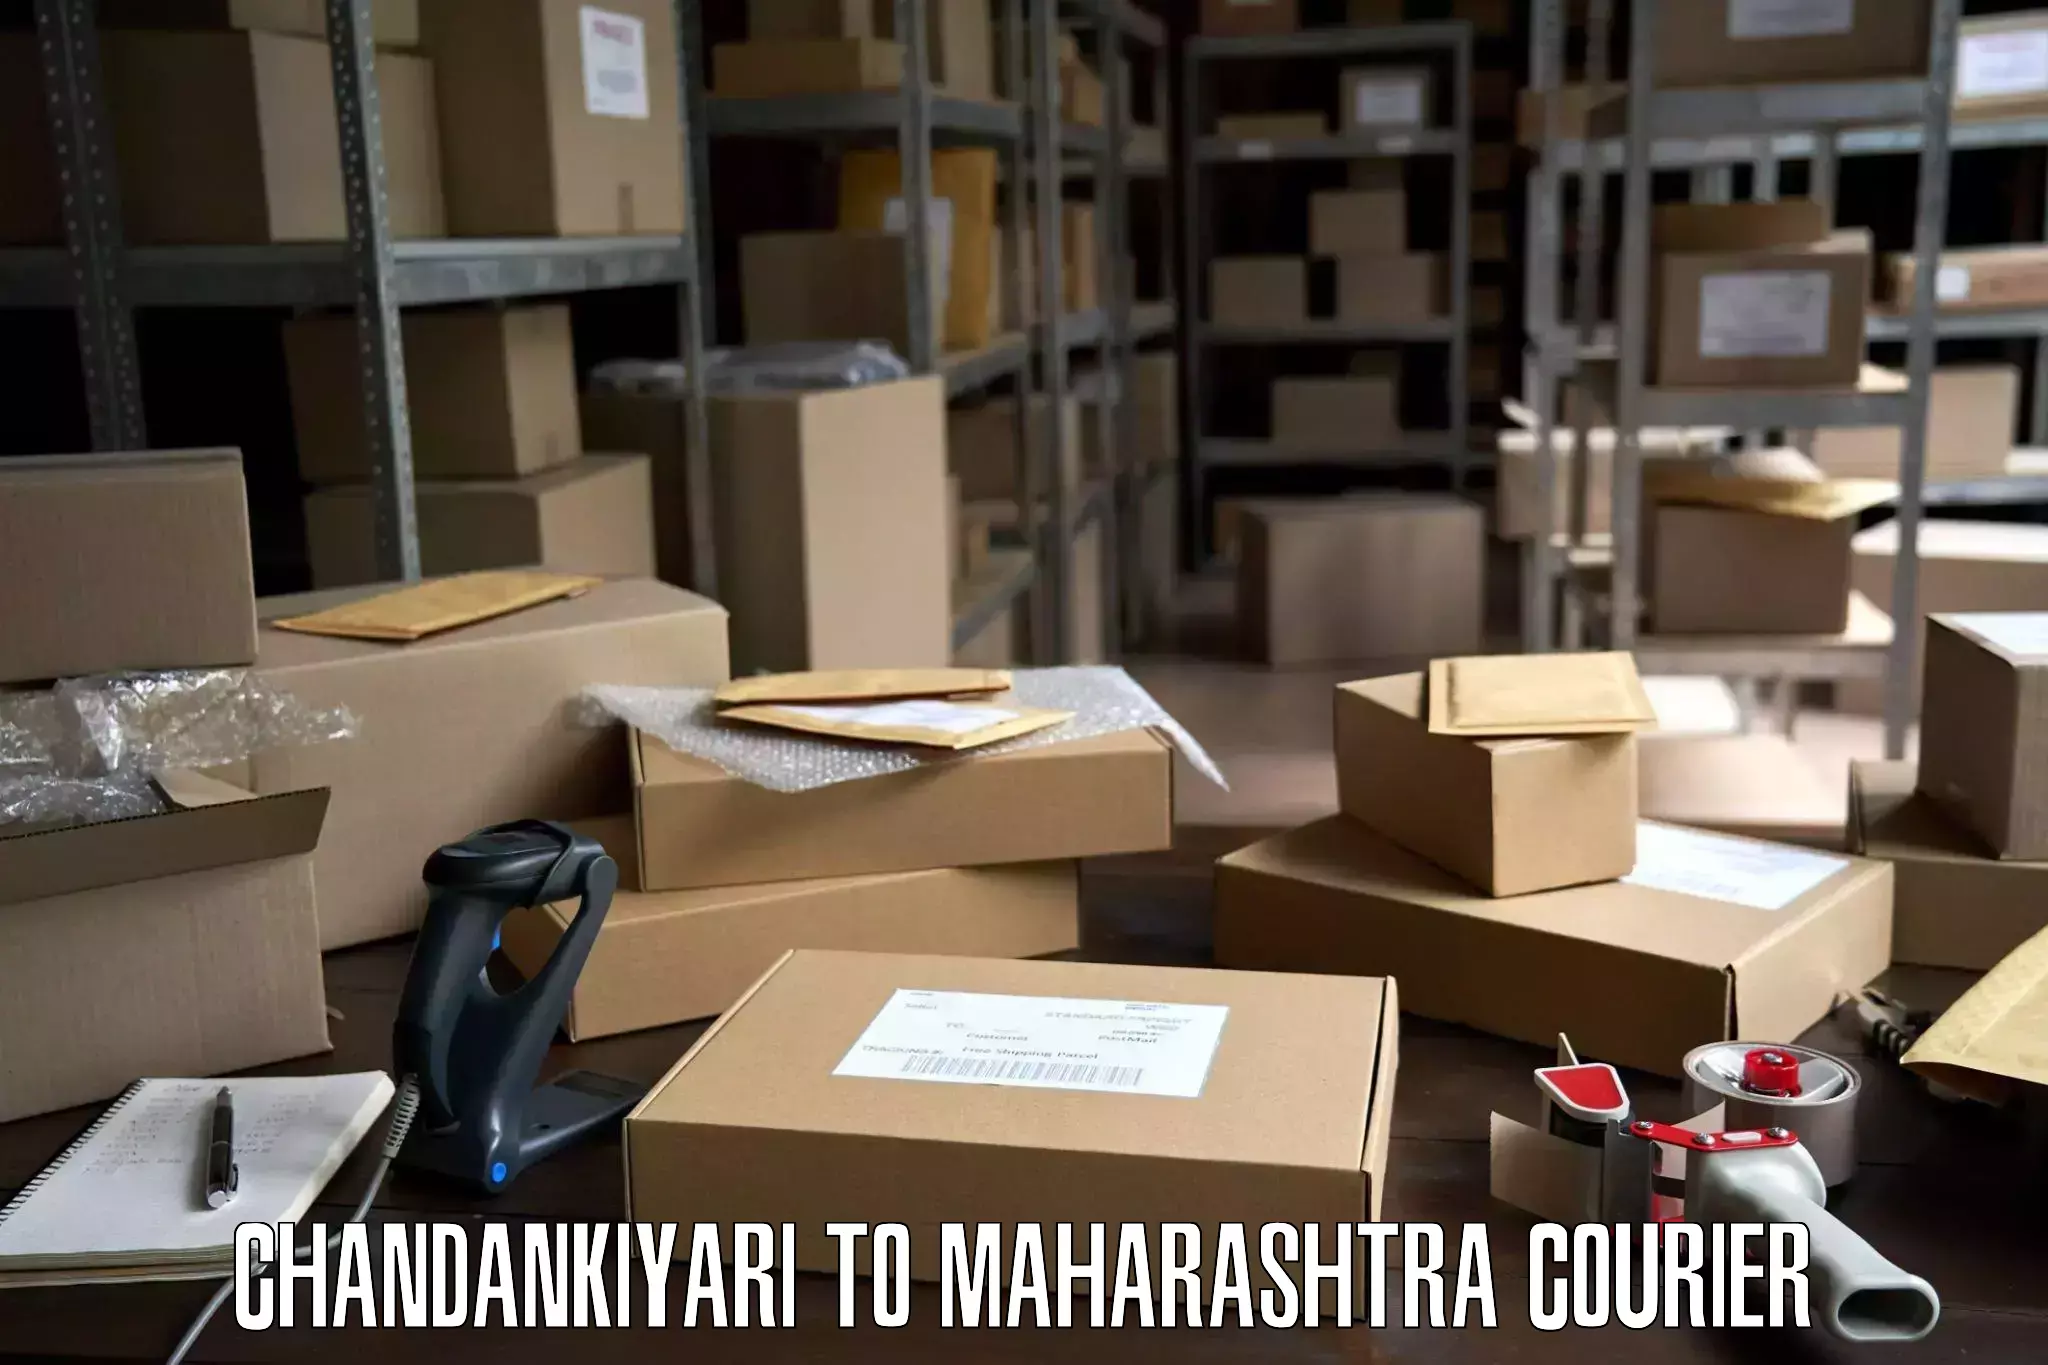 Trusted furniture movers Chandankiyari to Dindori Nashik